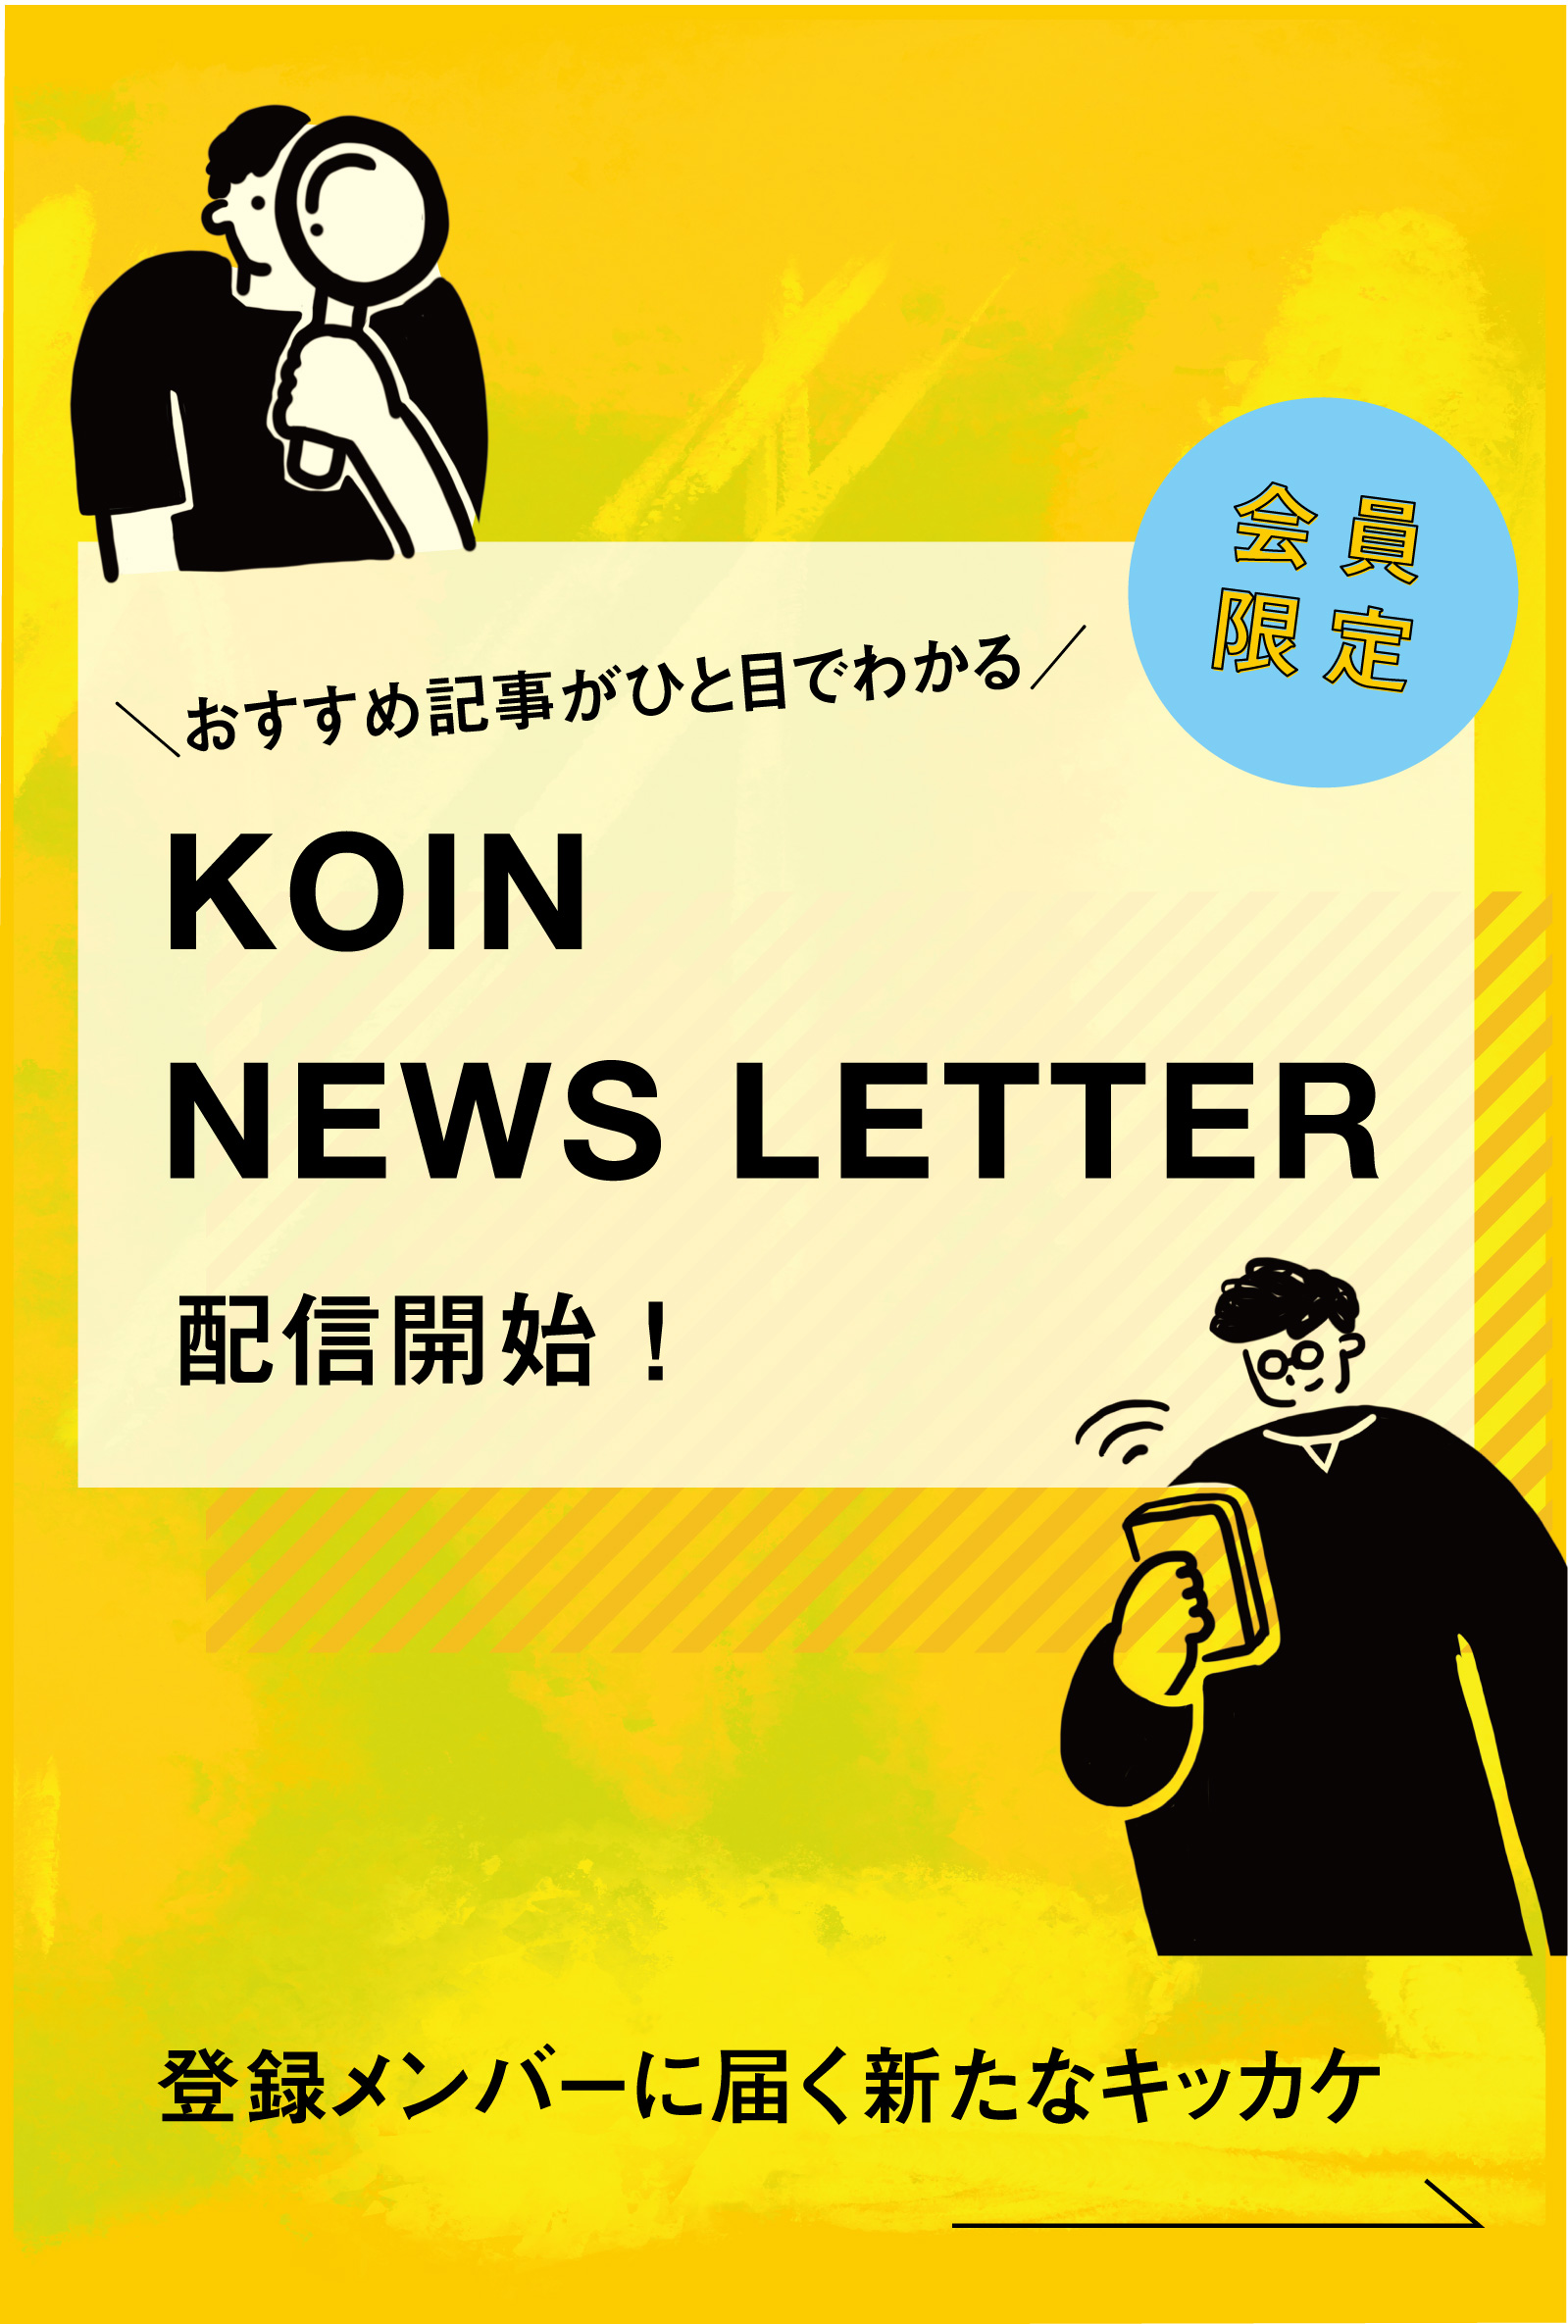 おすすめ記事がひと目でわかる KOIN NEWS LETTER配信開始！